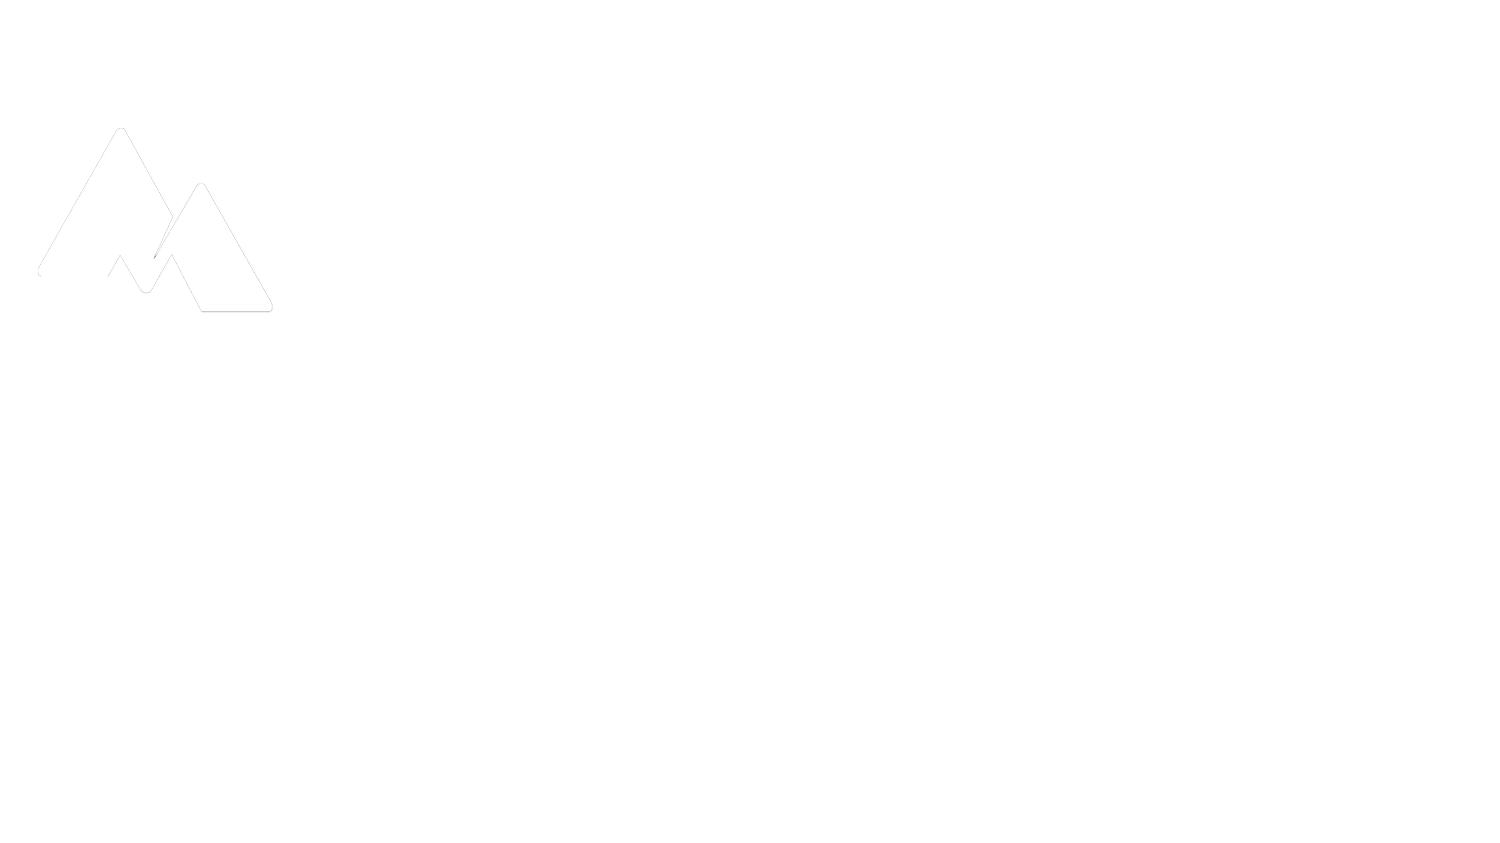 Martin Bernard